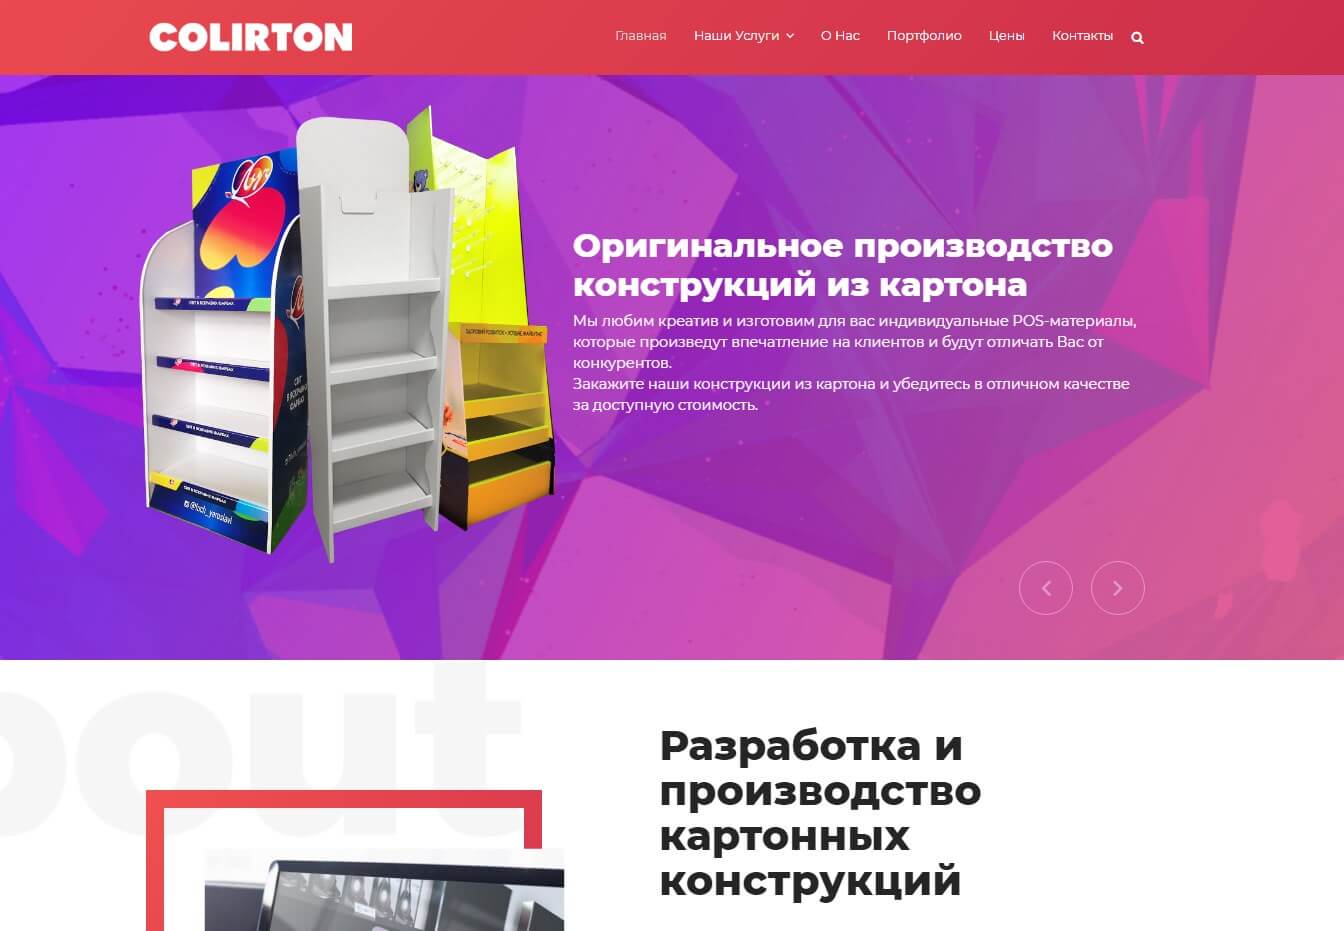 Компания по производству POS-материалов из картона Colirton в Киеве